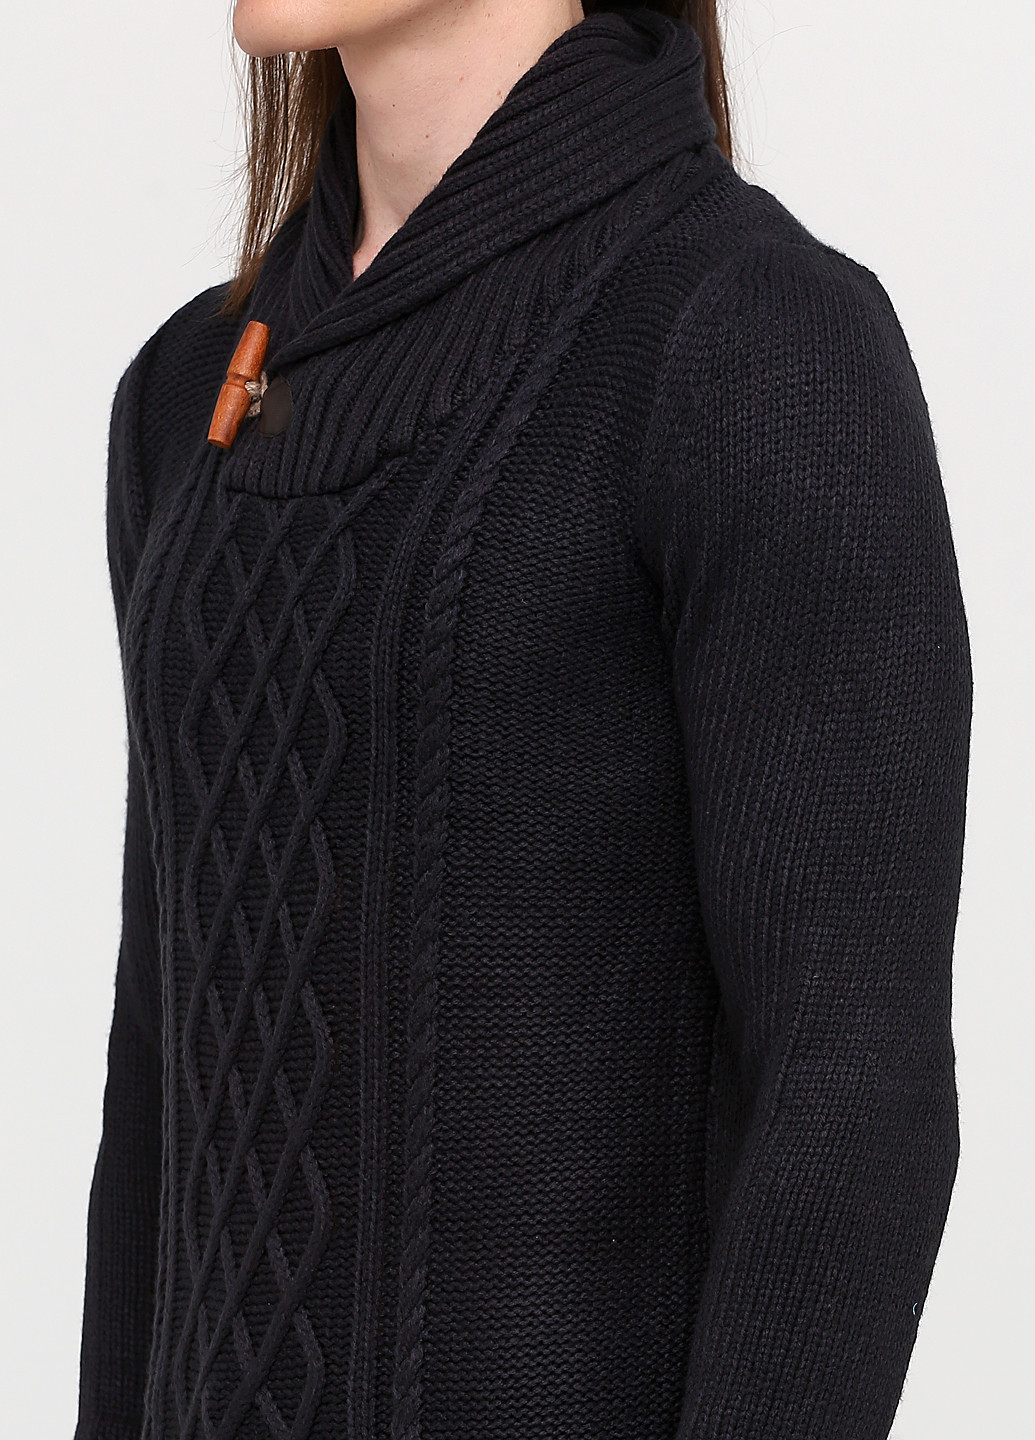 Черный зимний свитер Celio